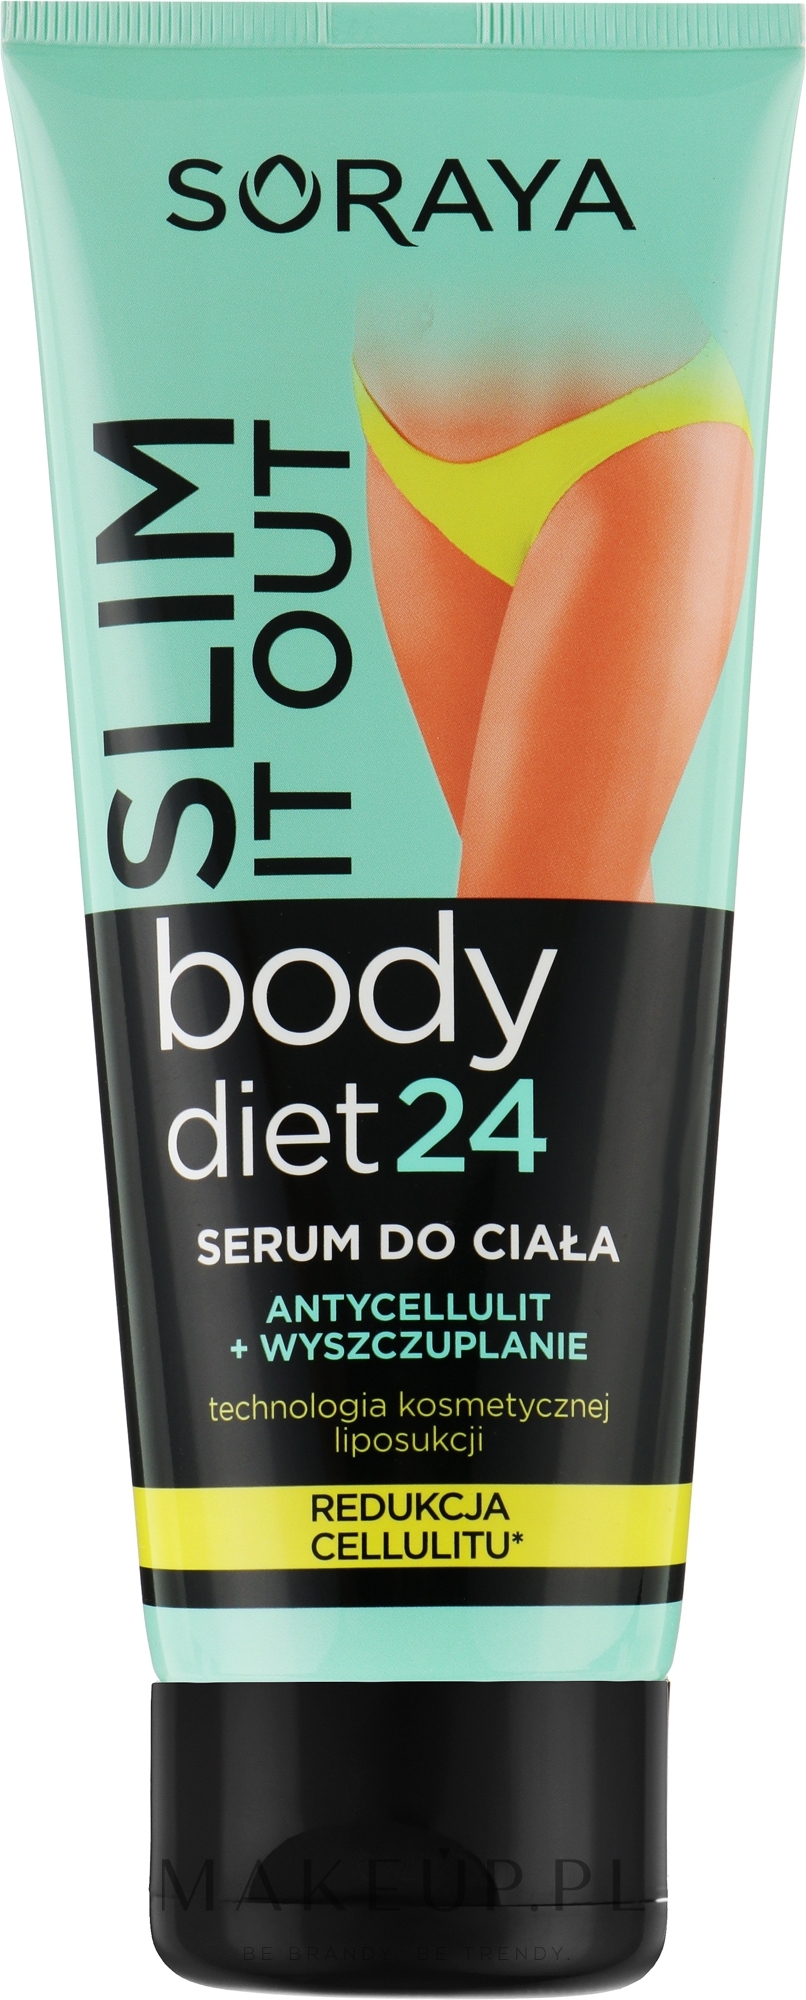 Serum do ciała Antycellulit i wyszczuplanie - Soraya Body Diet 24 Body Serum Anti-cellulite and Slimming — Zdjęcie 200 ml